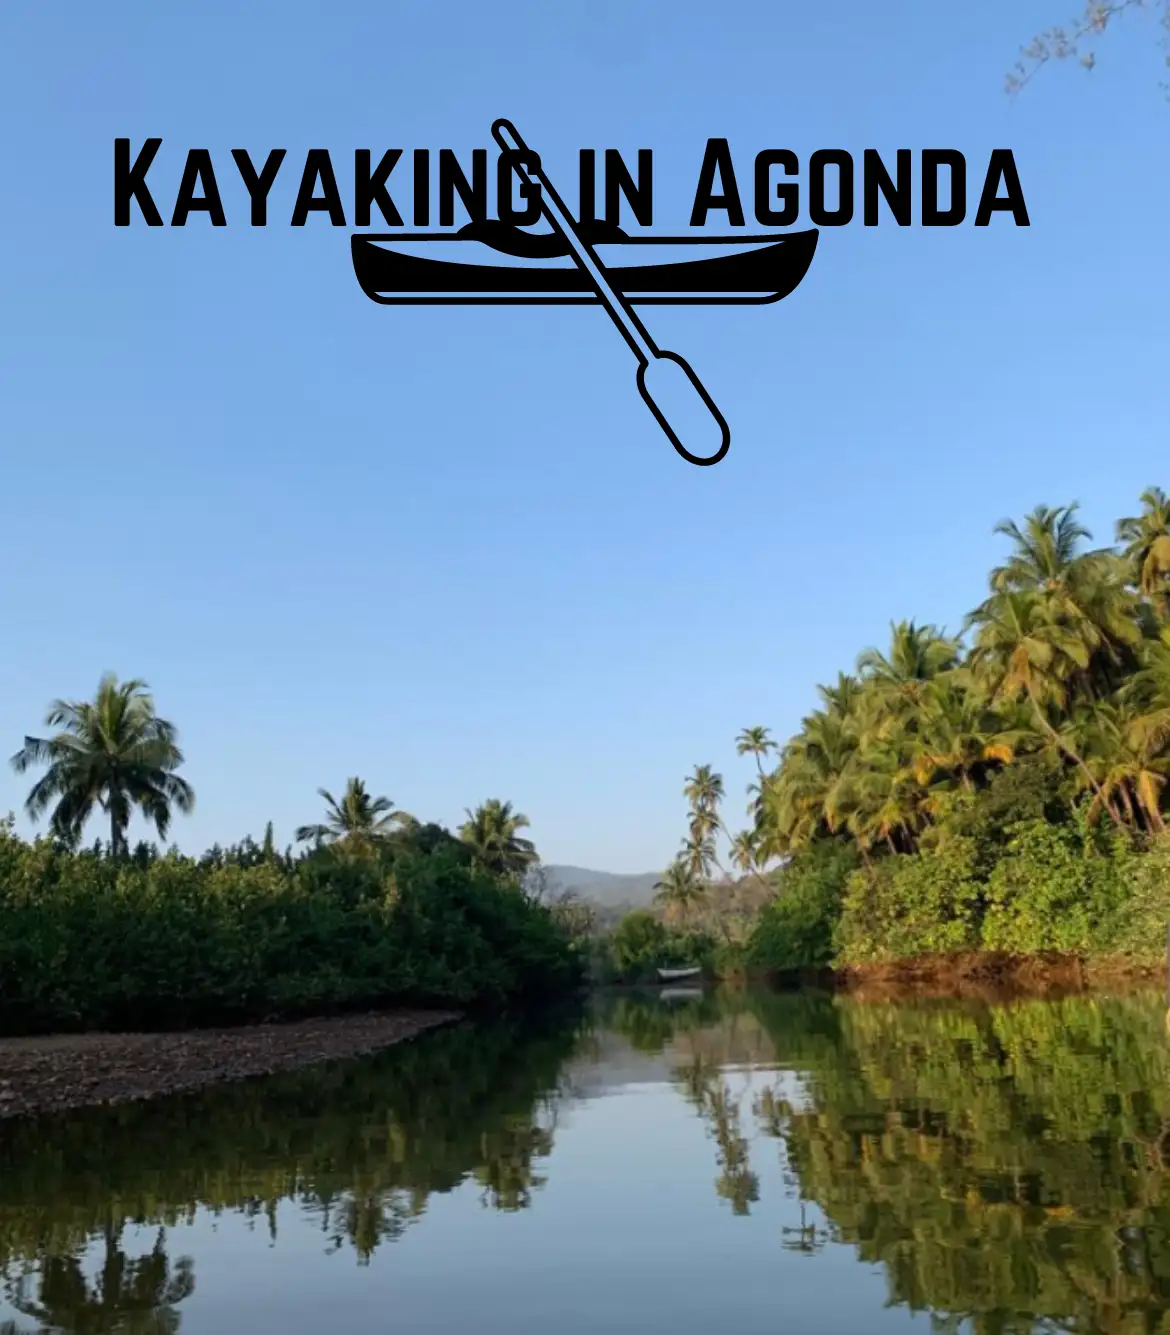 Kayaking in Agonda